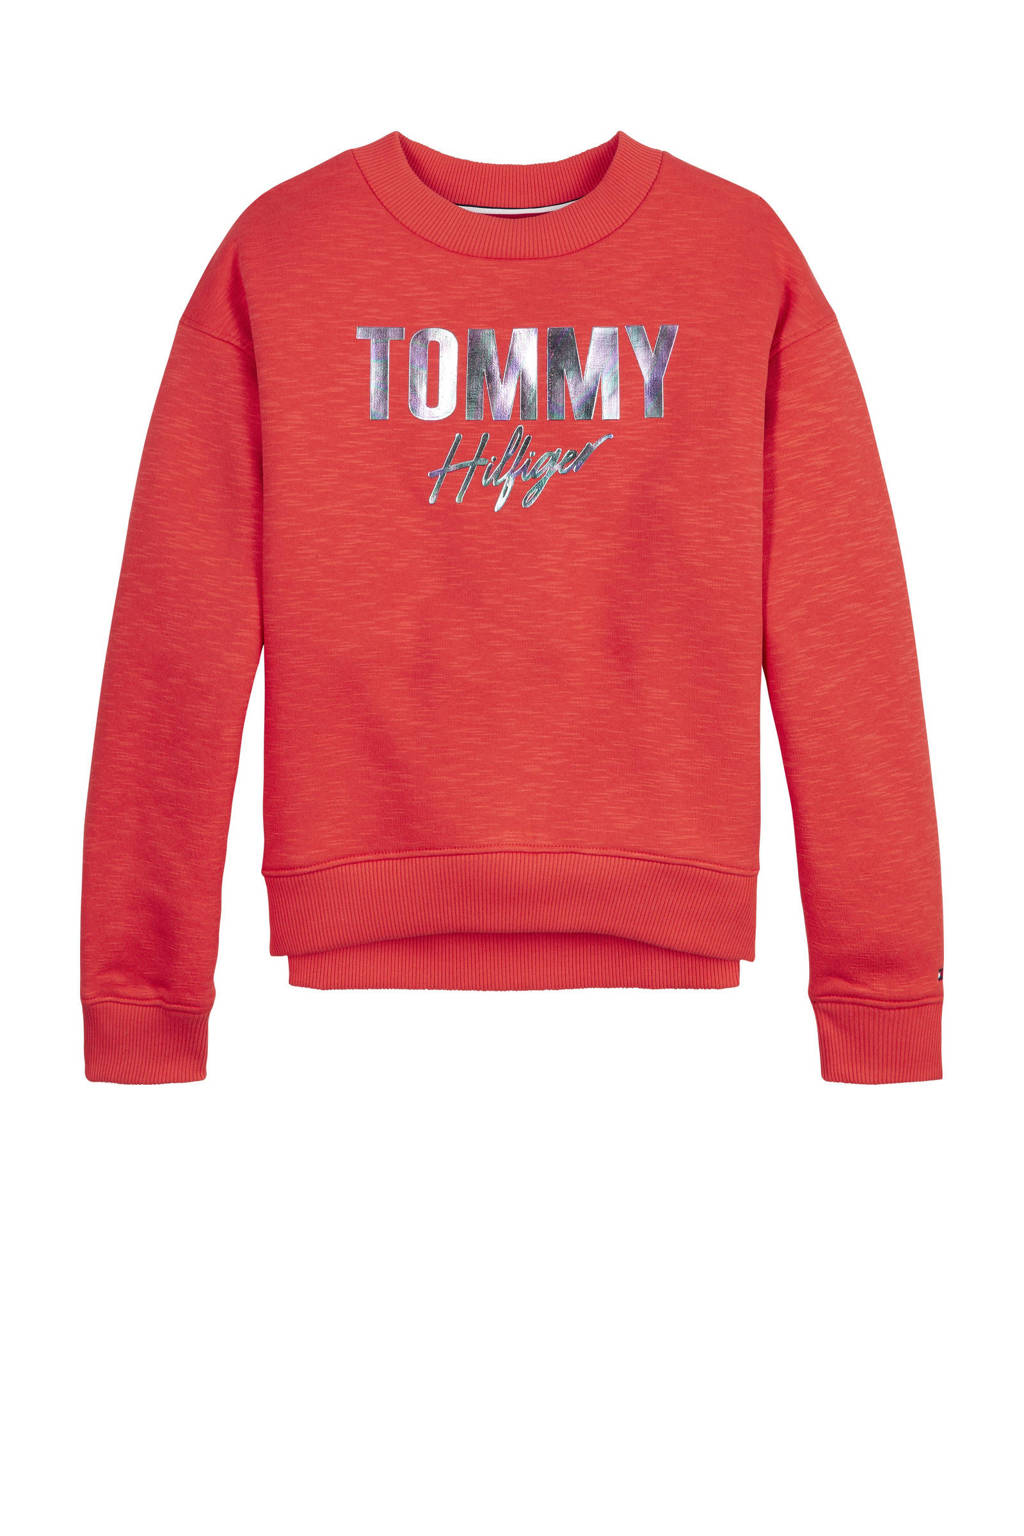 Moreel kroeg Aziatisch Tommy Hilfiger sweater met logo koraalrood/zilver | wehkamp